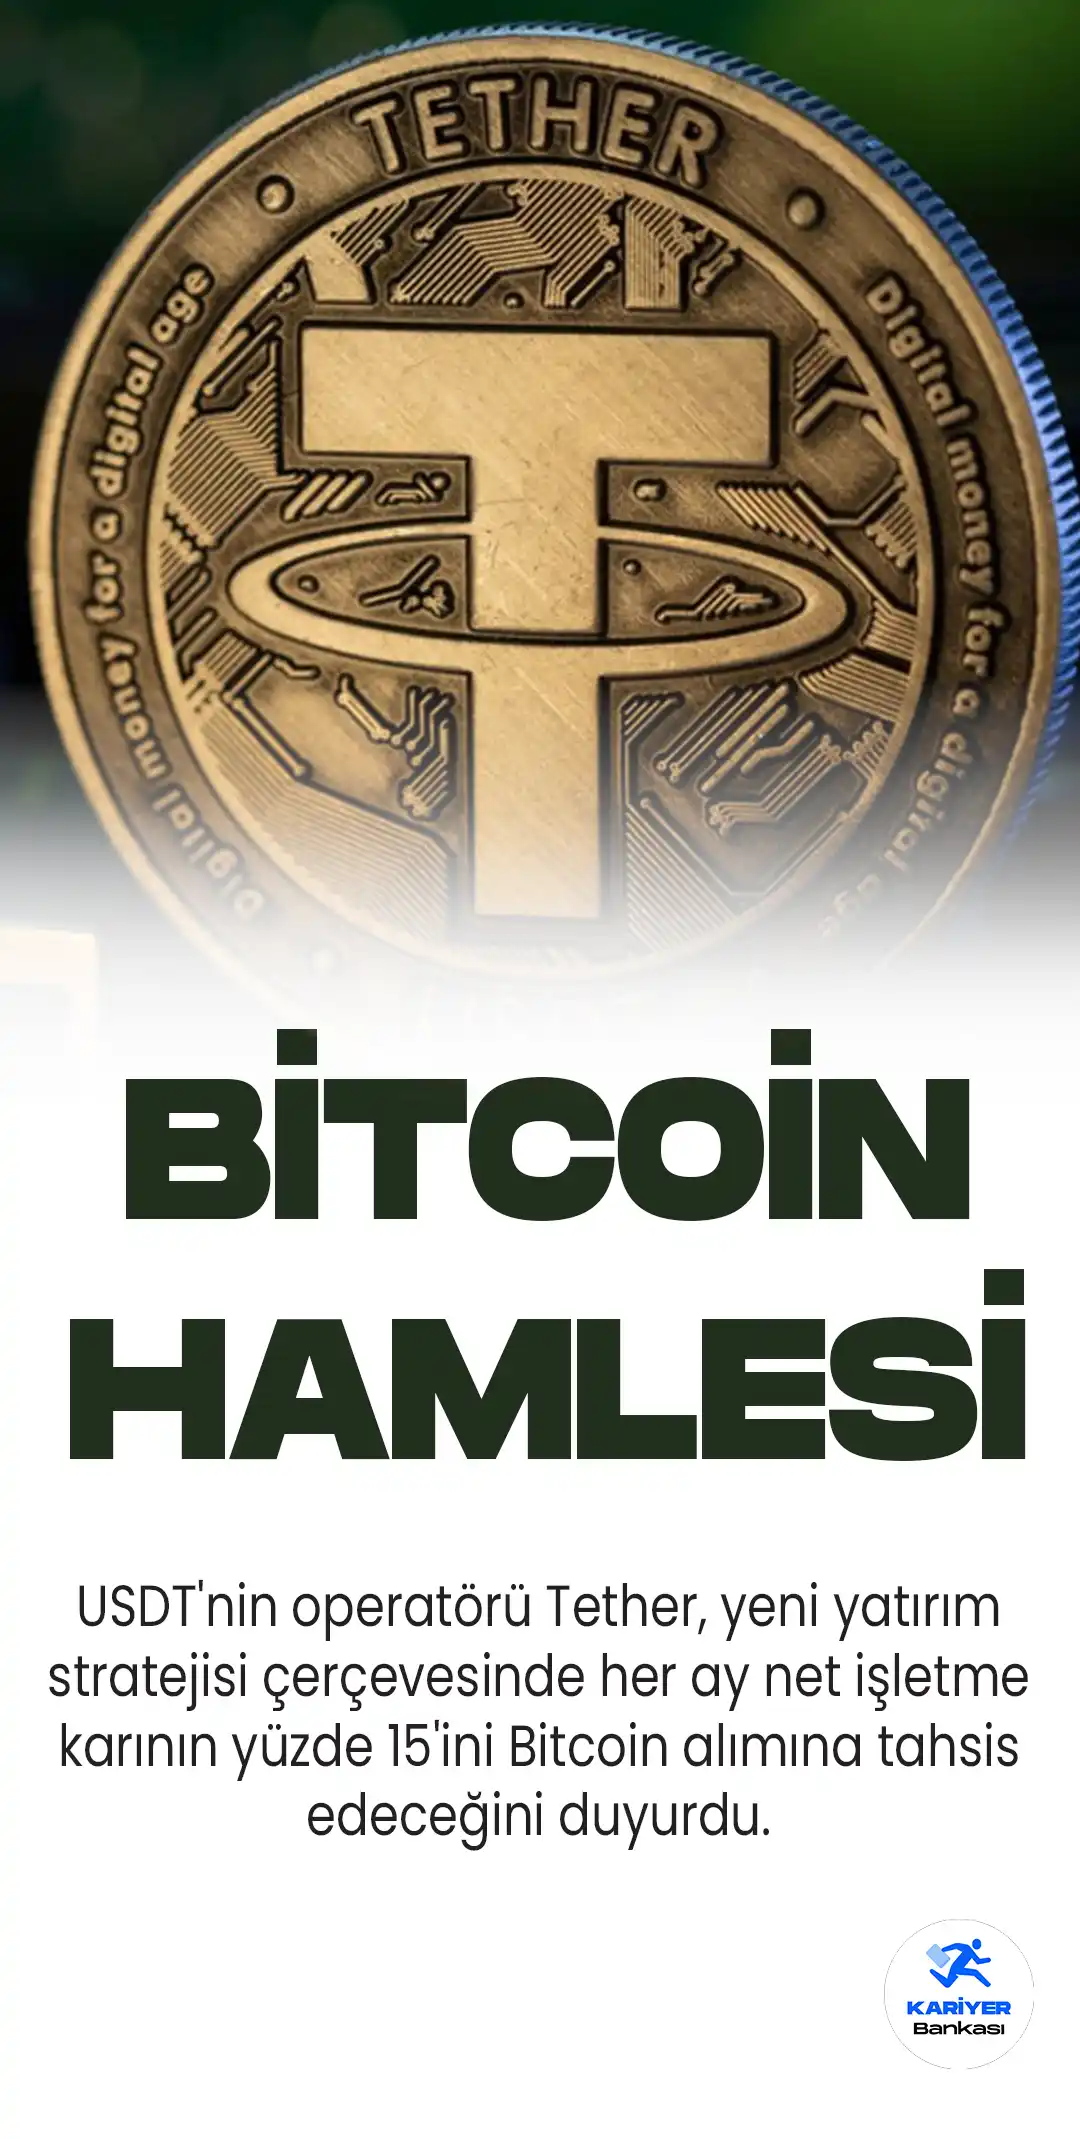 USDT'nin operatörü Tether, yeni yatırım stratejisi çerçevesinde her ay net işletme karının yüzde 15'ini Bitcoin alımına tahsis edeceğini duyurdu.